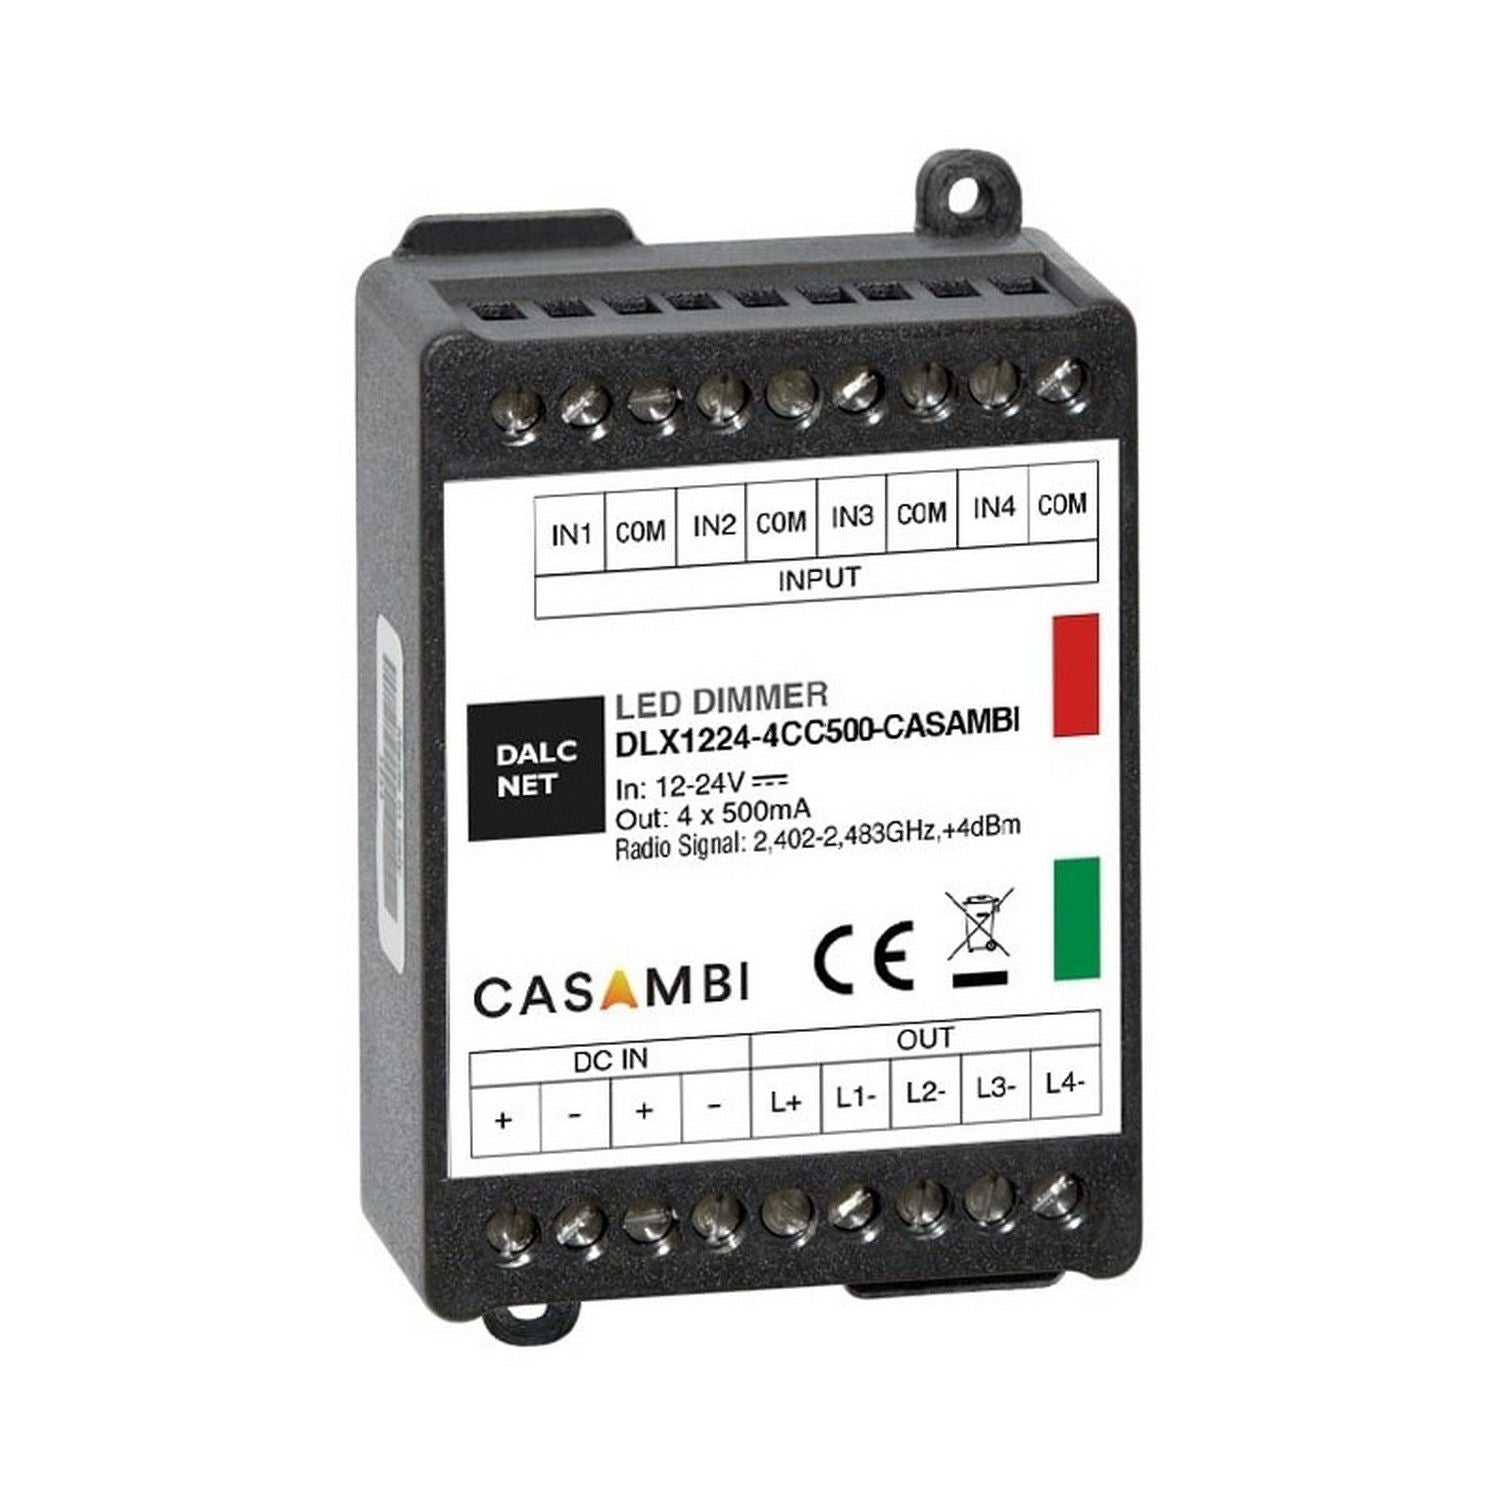 Casambi 4-Ch Constant Current LED Controller (500mA) ~ Model DLX1224-4CC500-CASAMBI